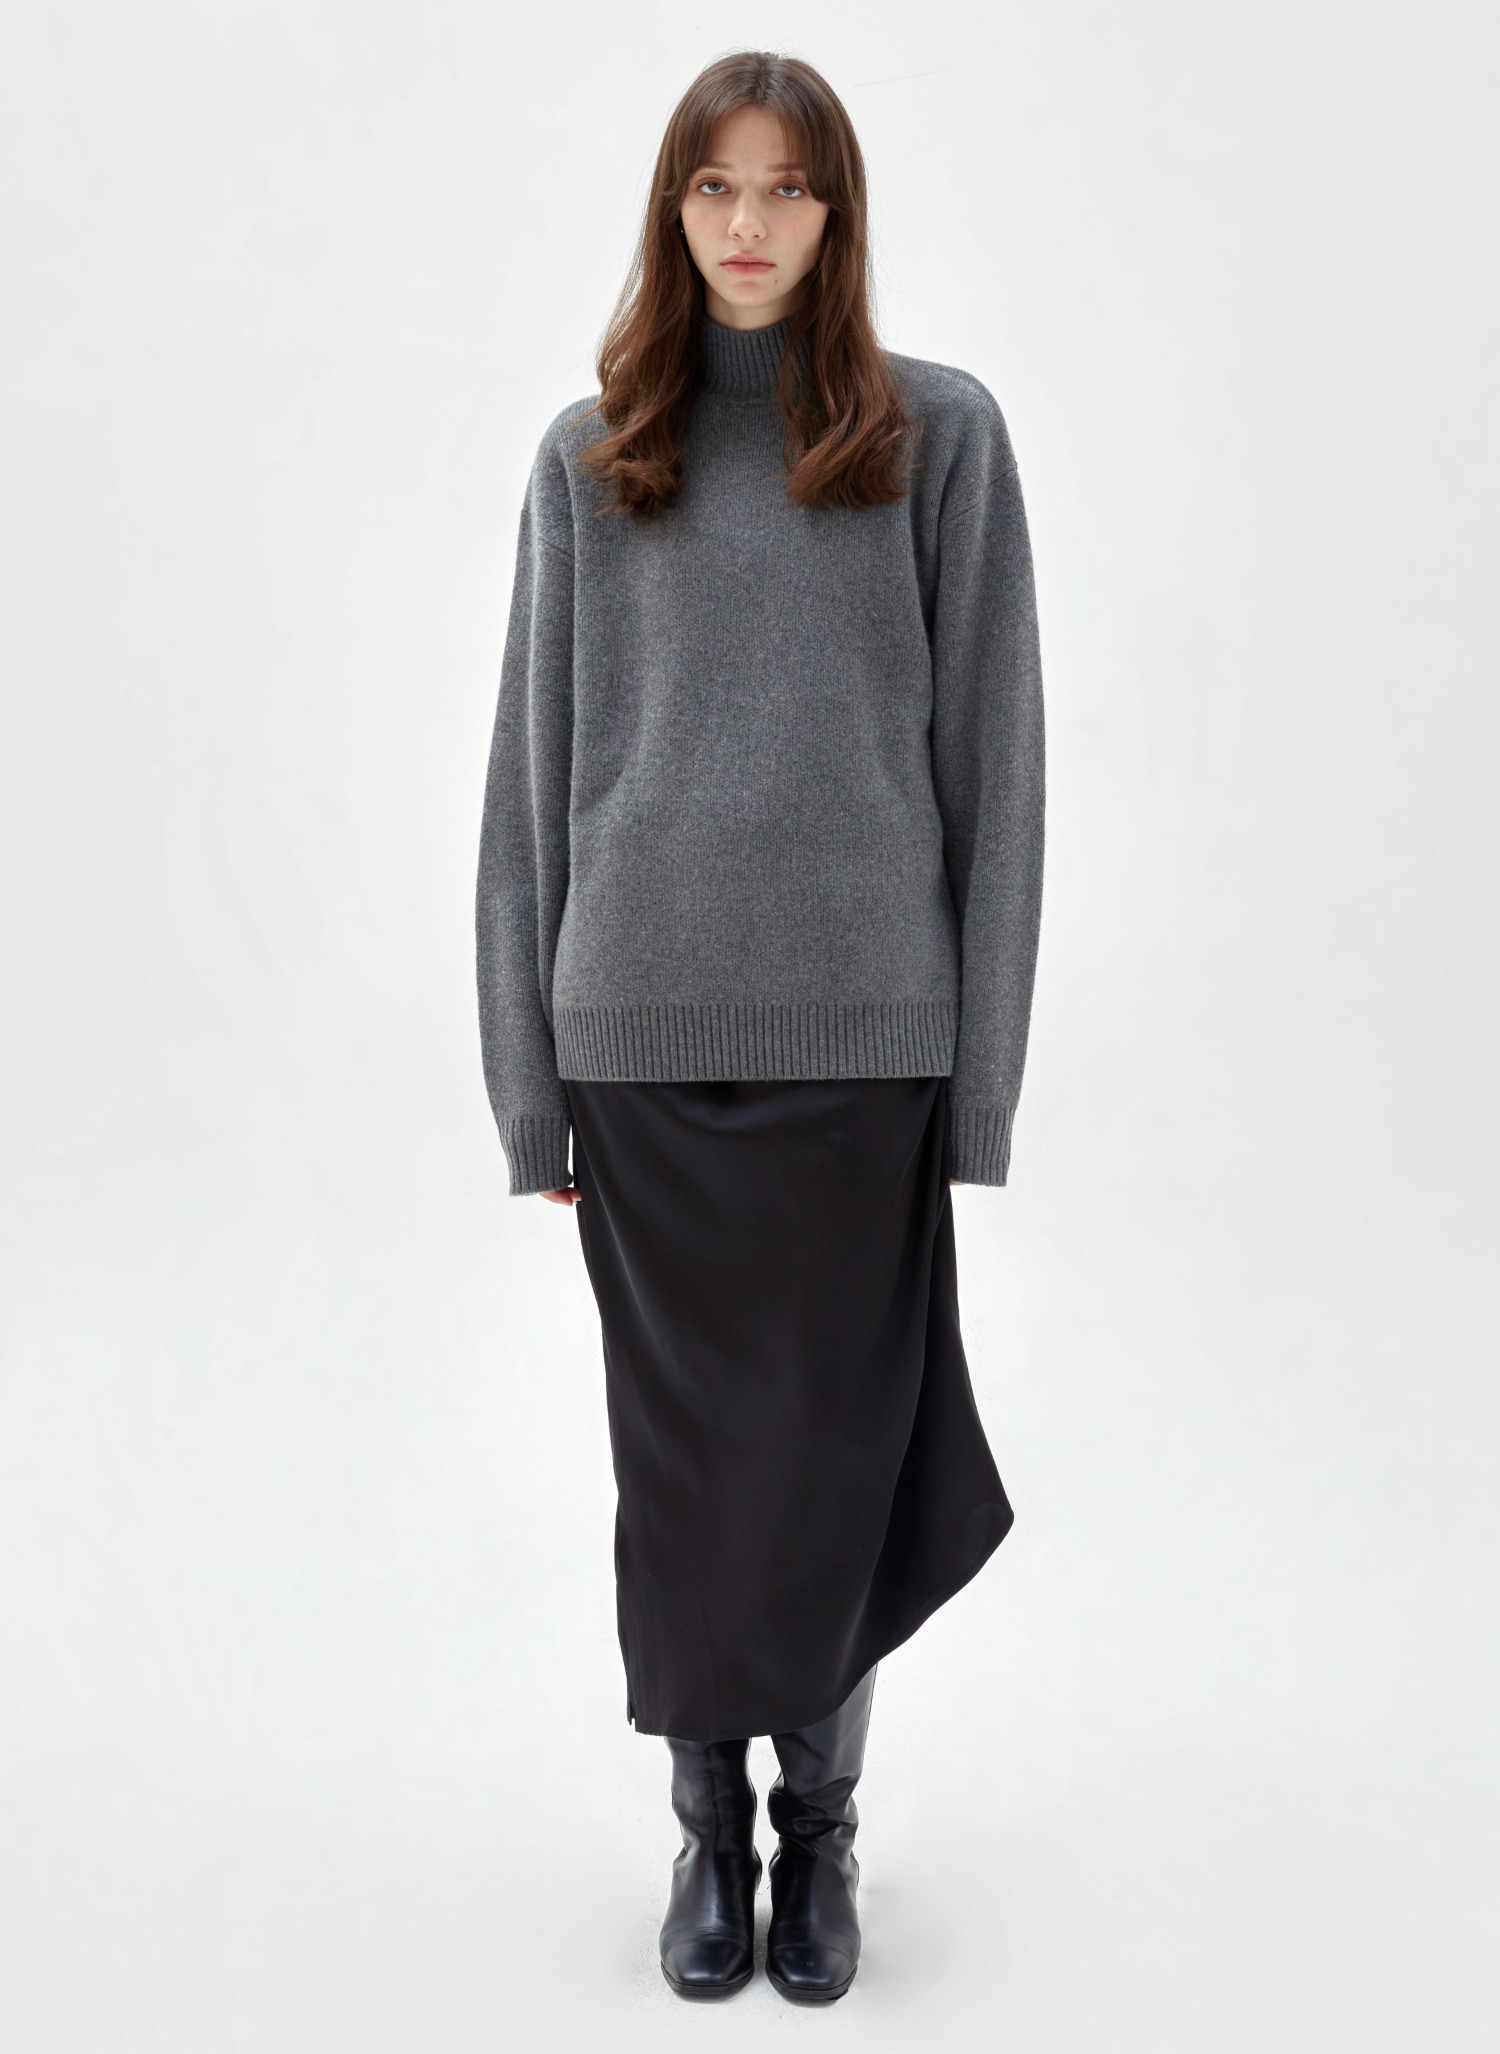 Oversized half-neck cashmere knit grey